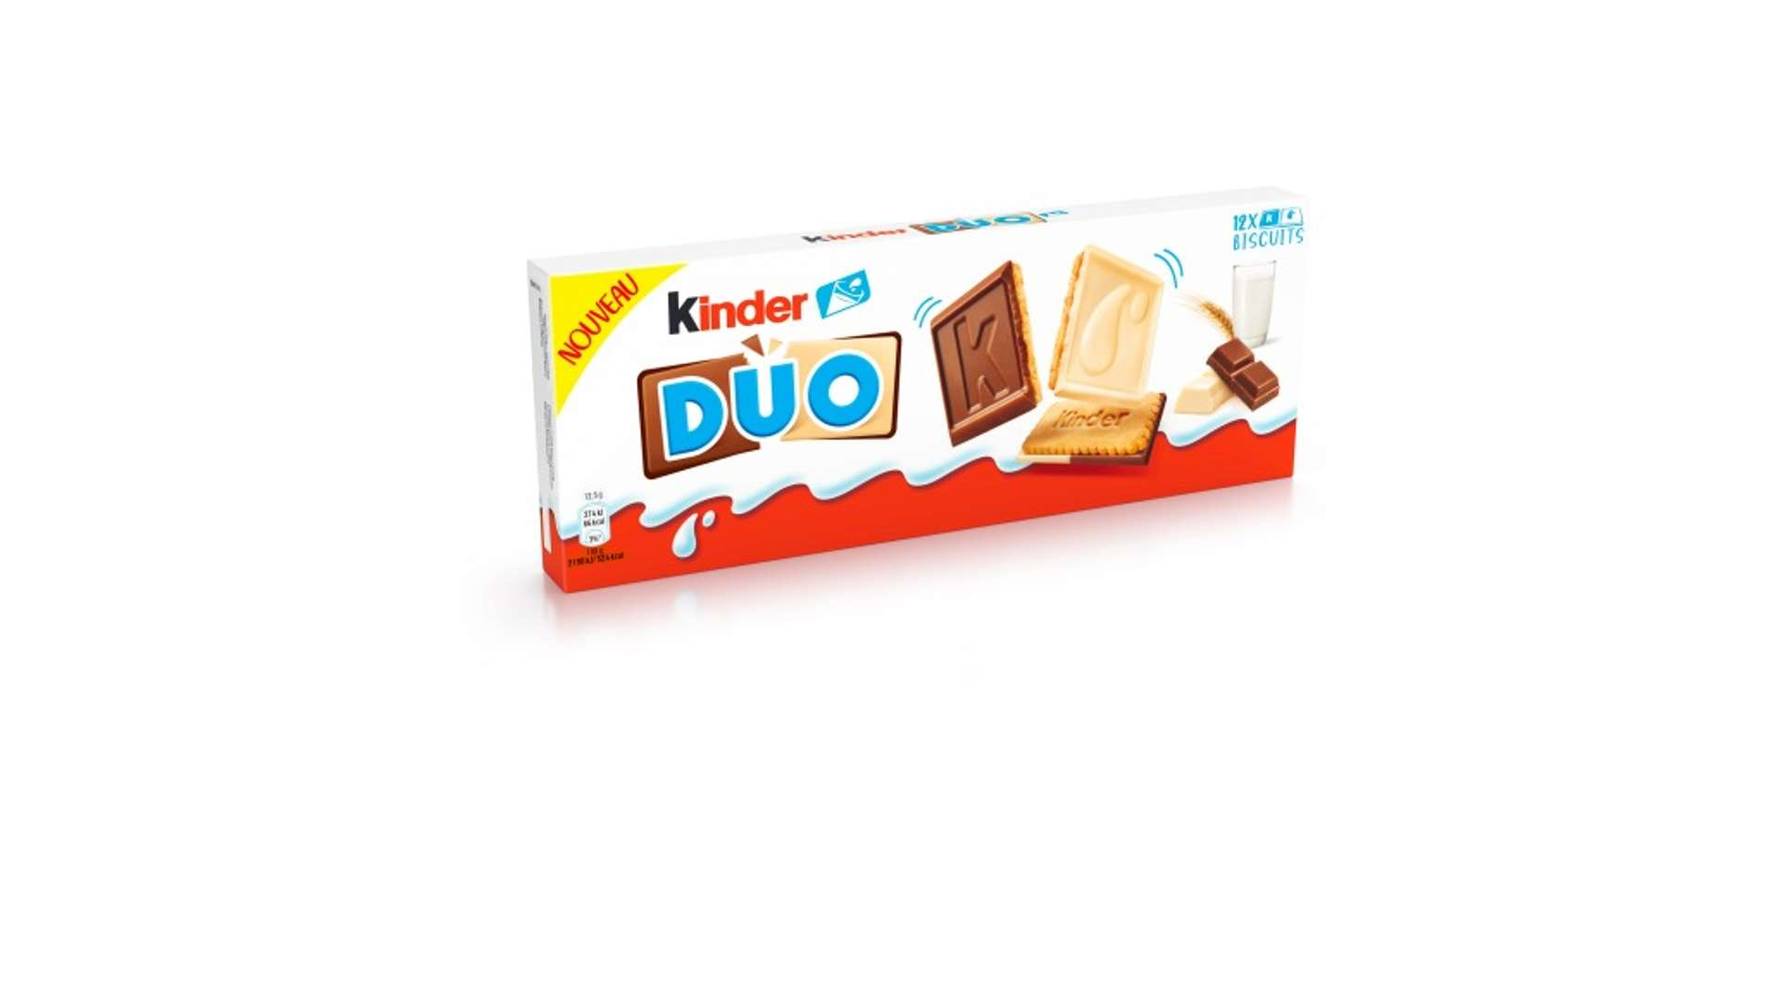 Kinder Biscuits nappé kinder duo chocolat lait kinder - x12 Le paquet de 150g